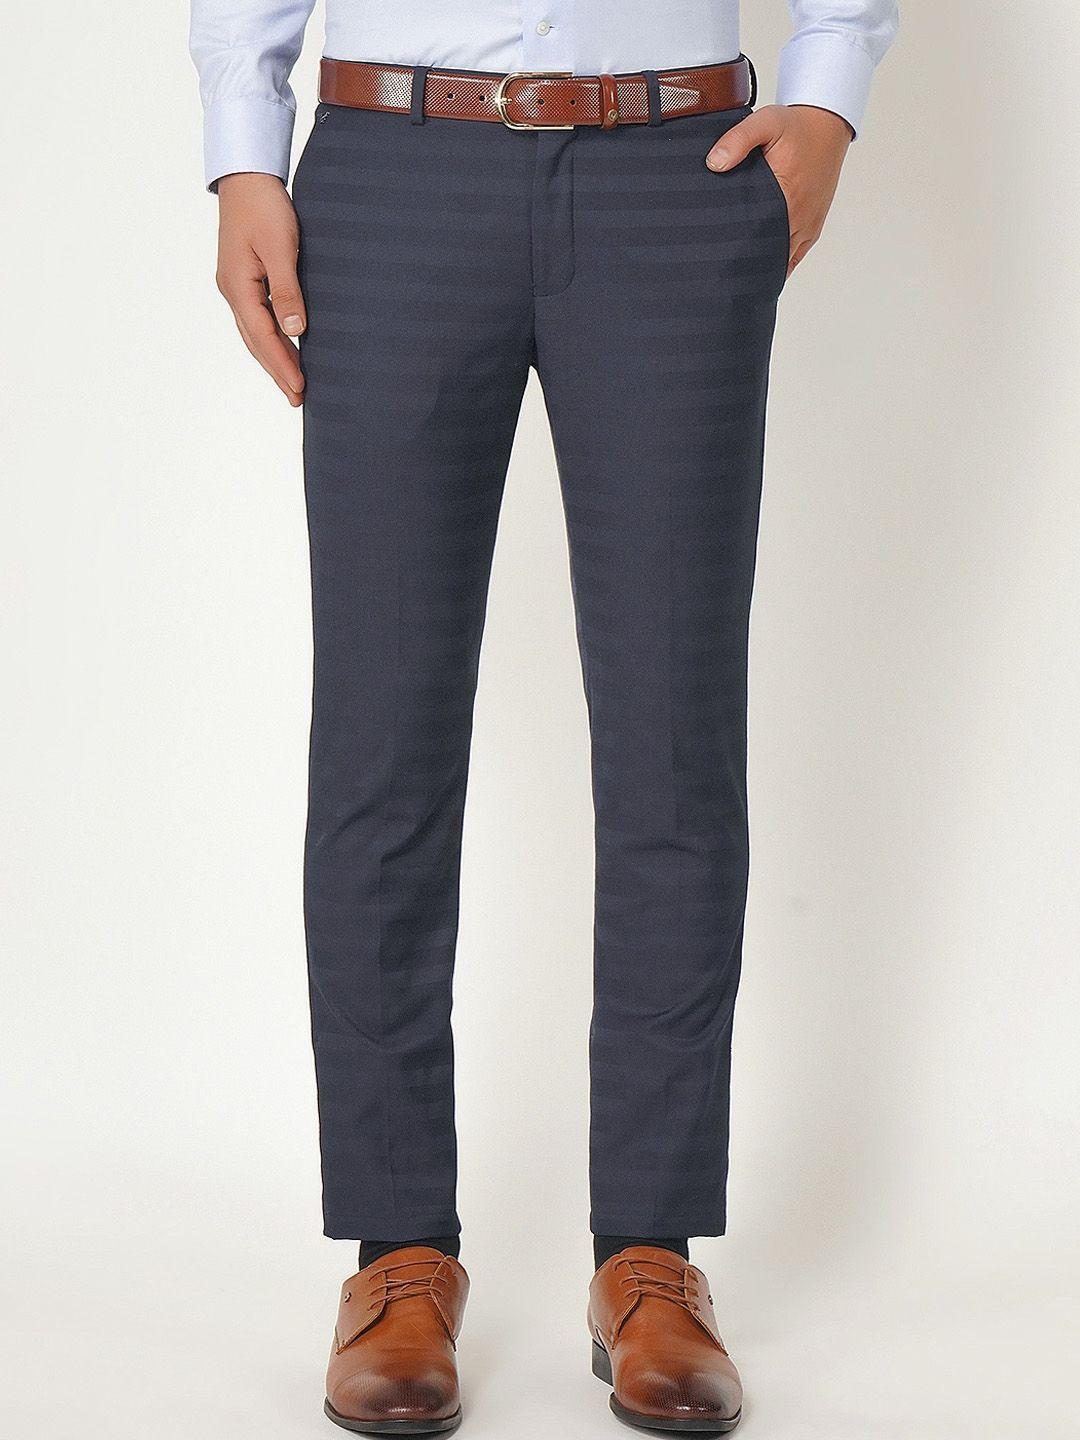 blackberrys-men-navy-blue-b-91-skinny-fit-formal-trousers